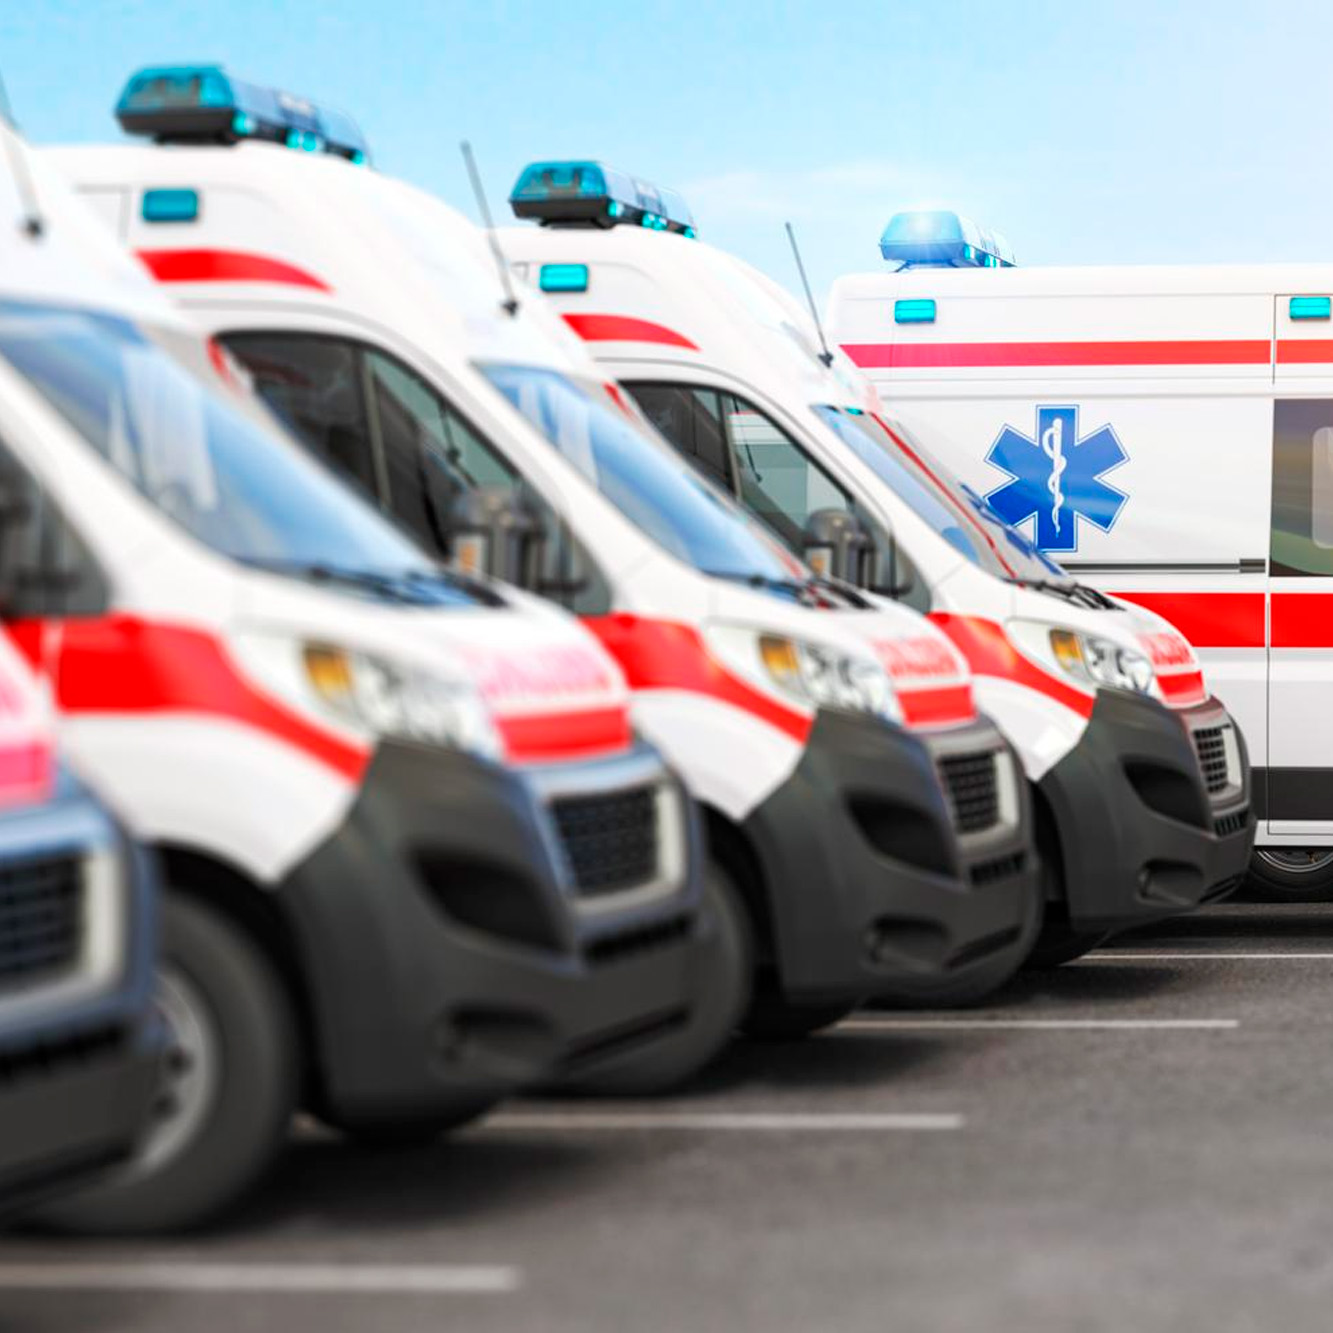 Servicio de ambulancias